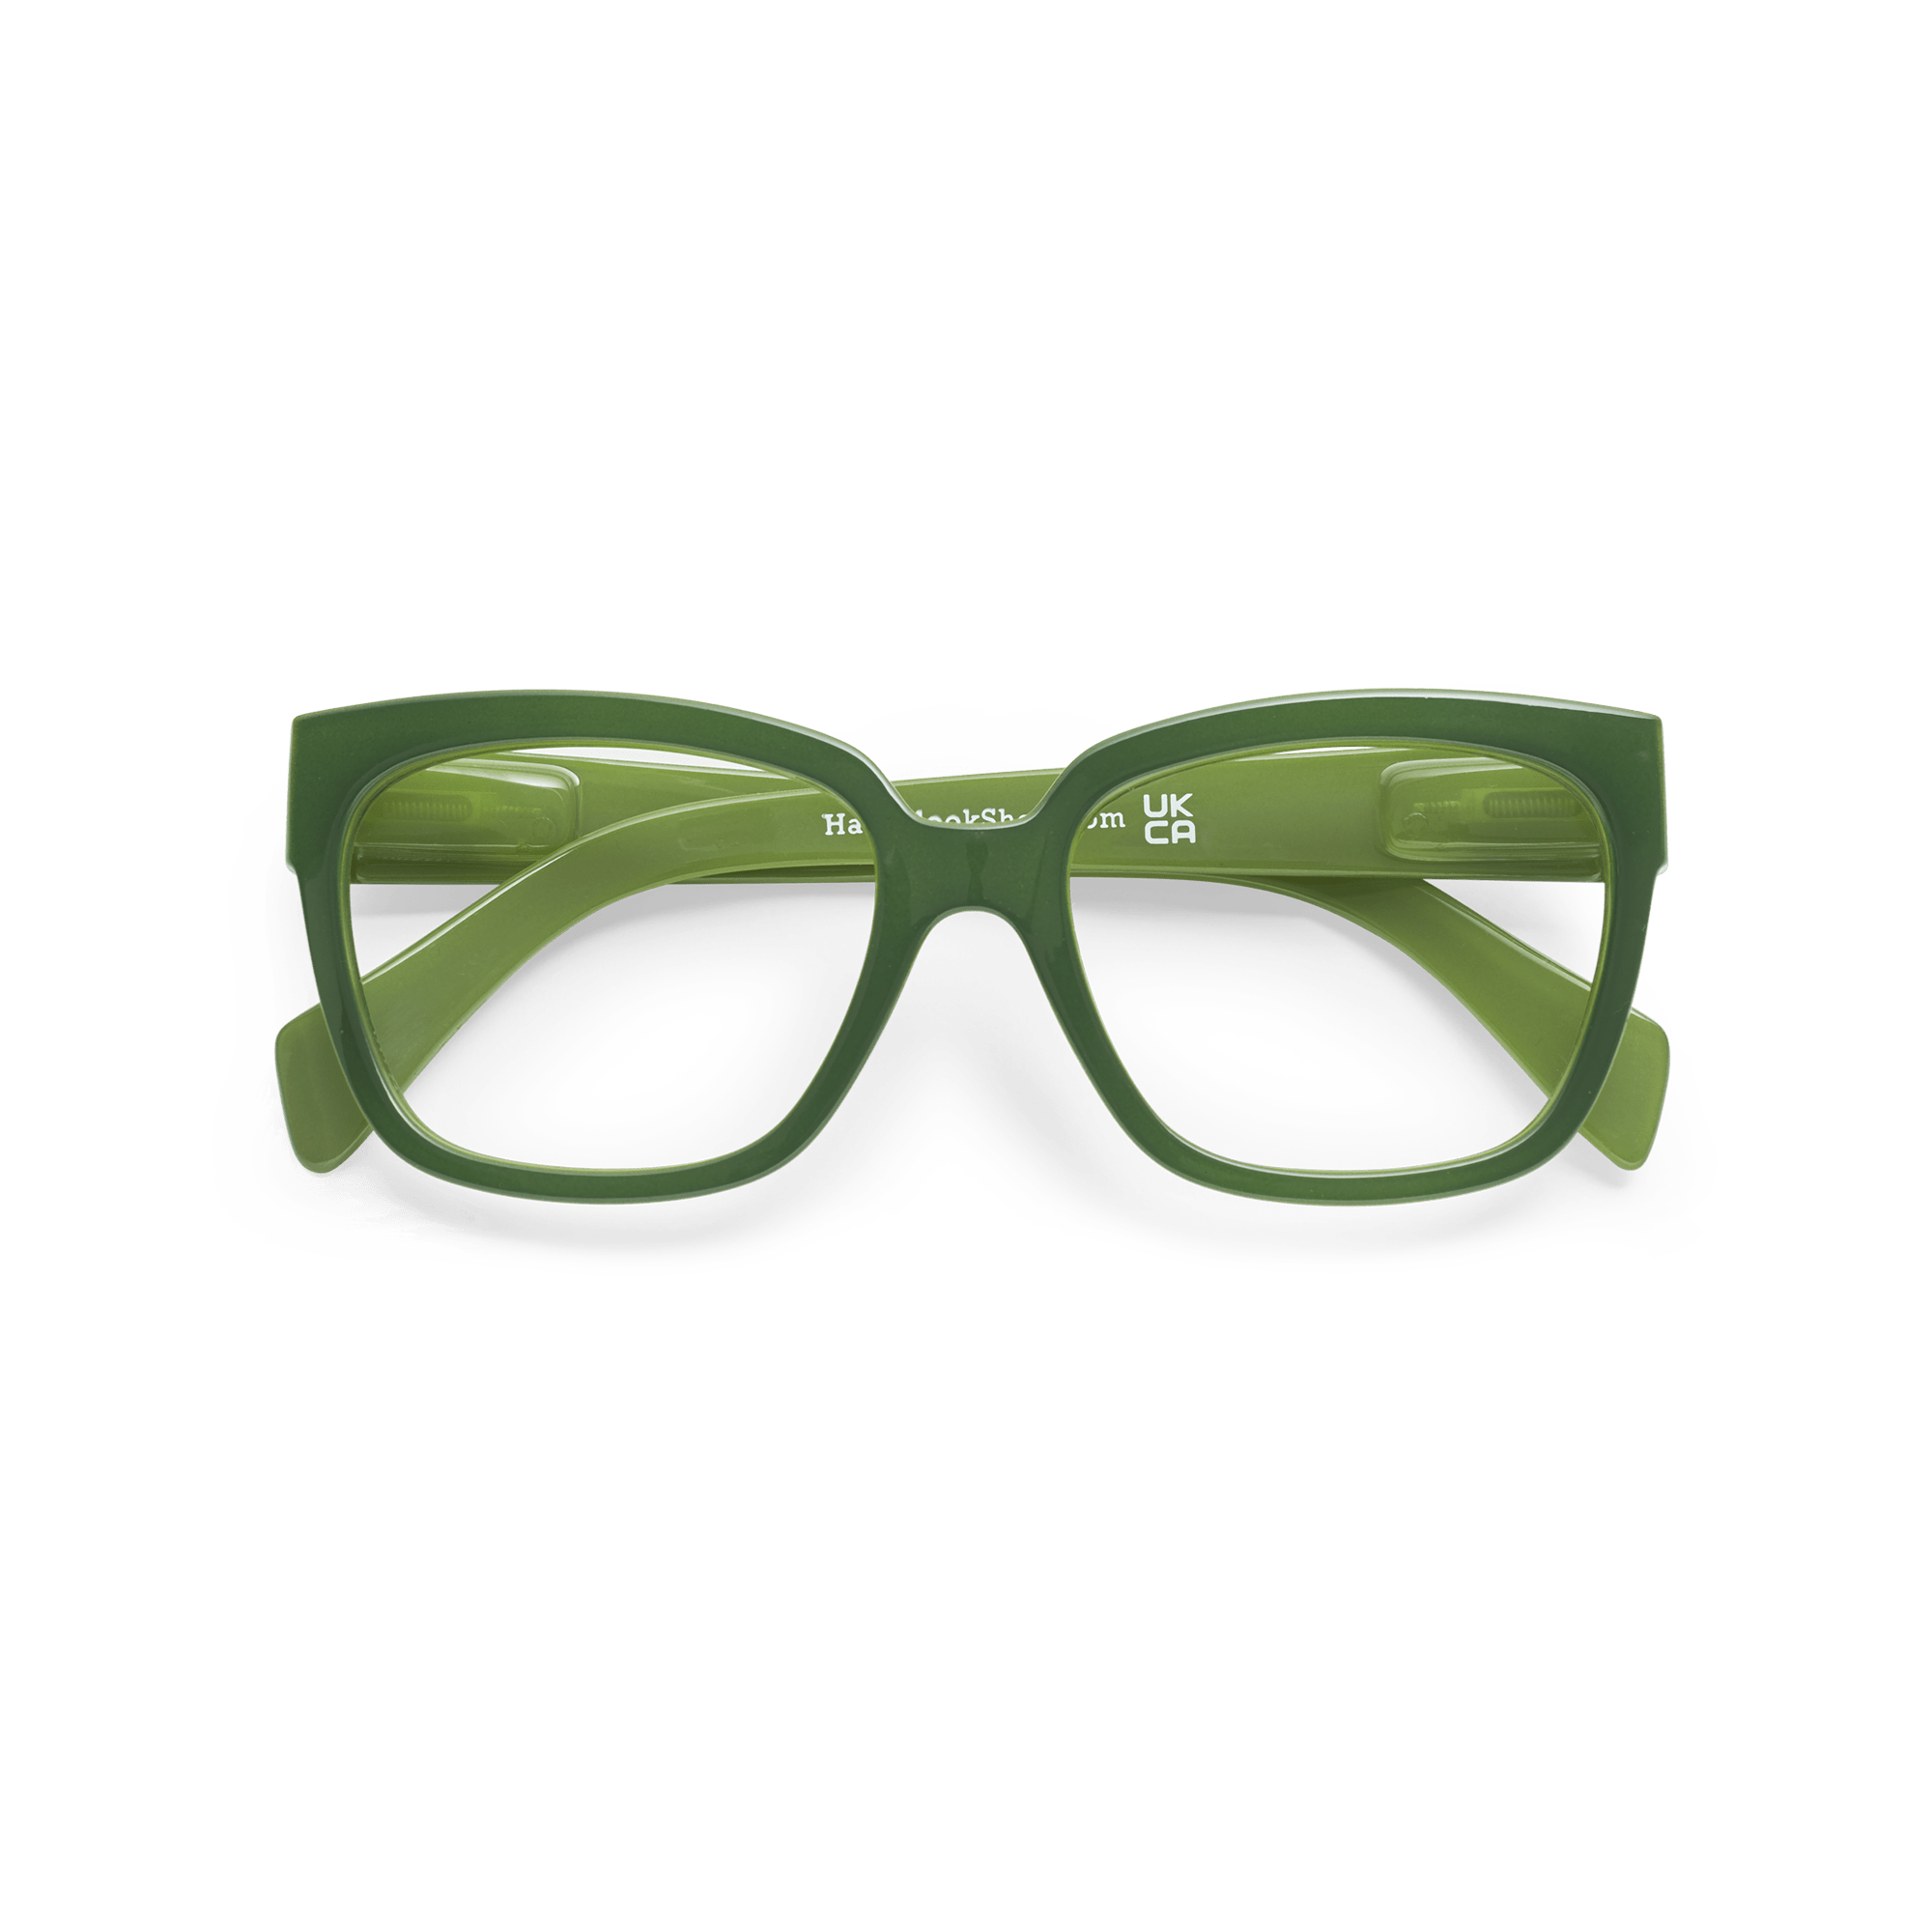 Minus glasses Mood - green